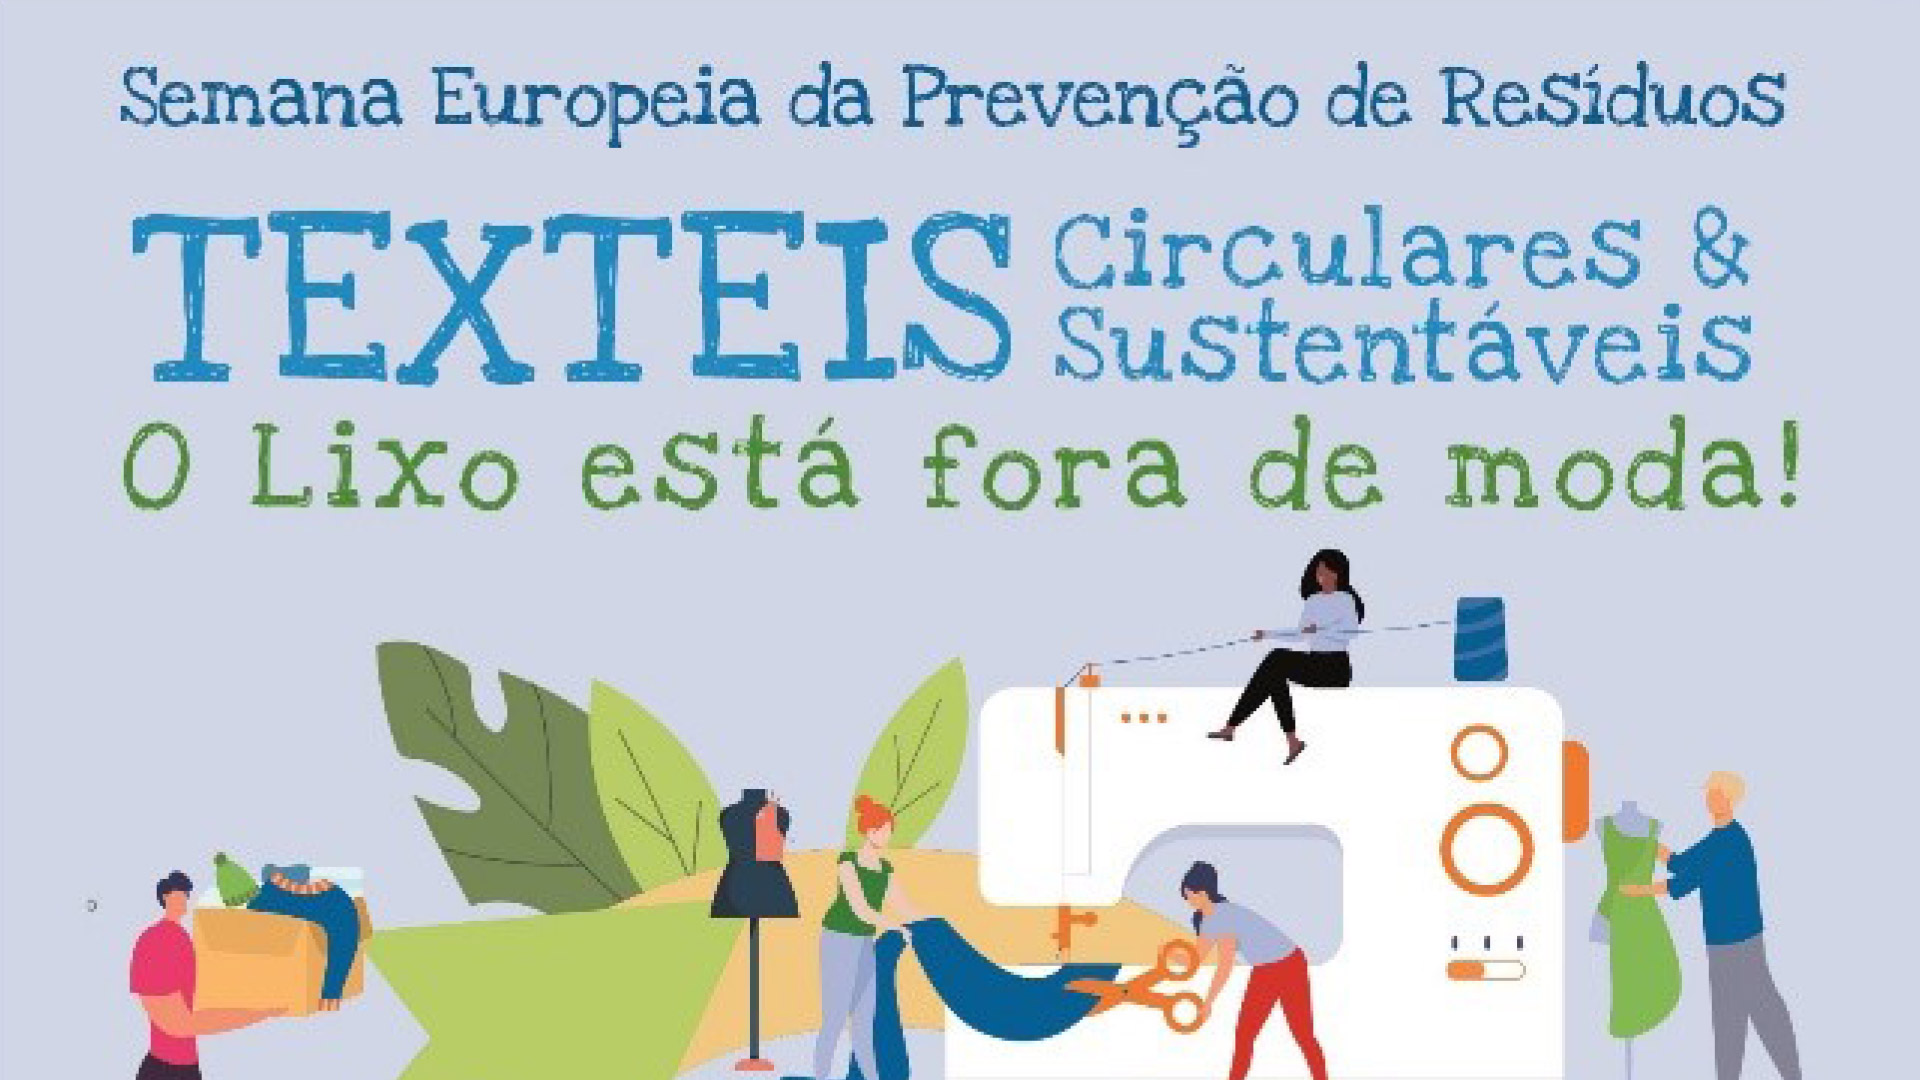 Lisboa associa-se à Semana Europeia da Prevenção de Resíduos